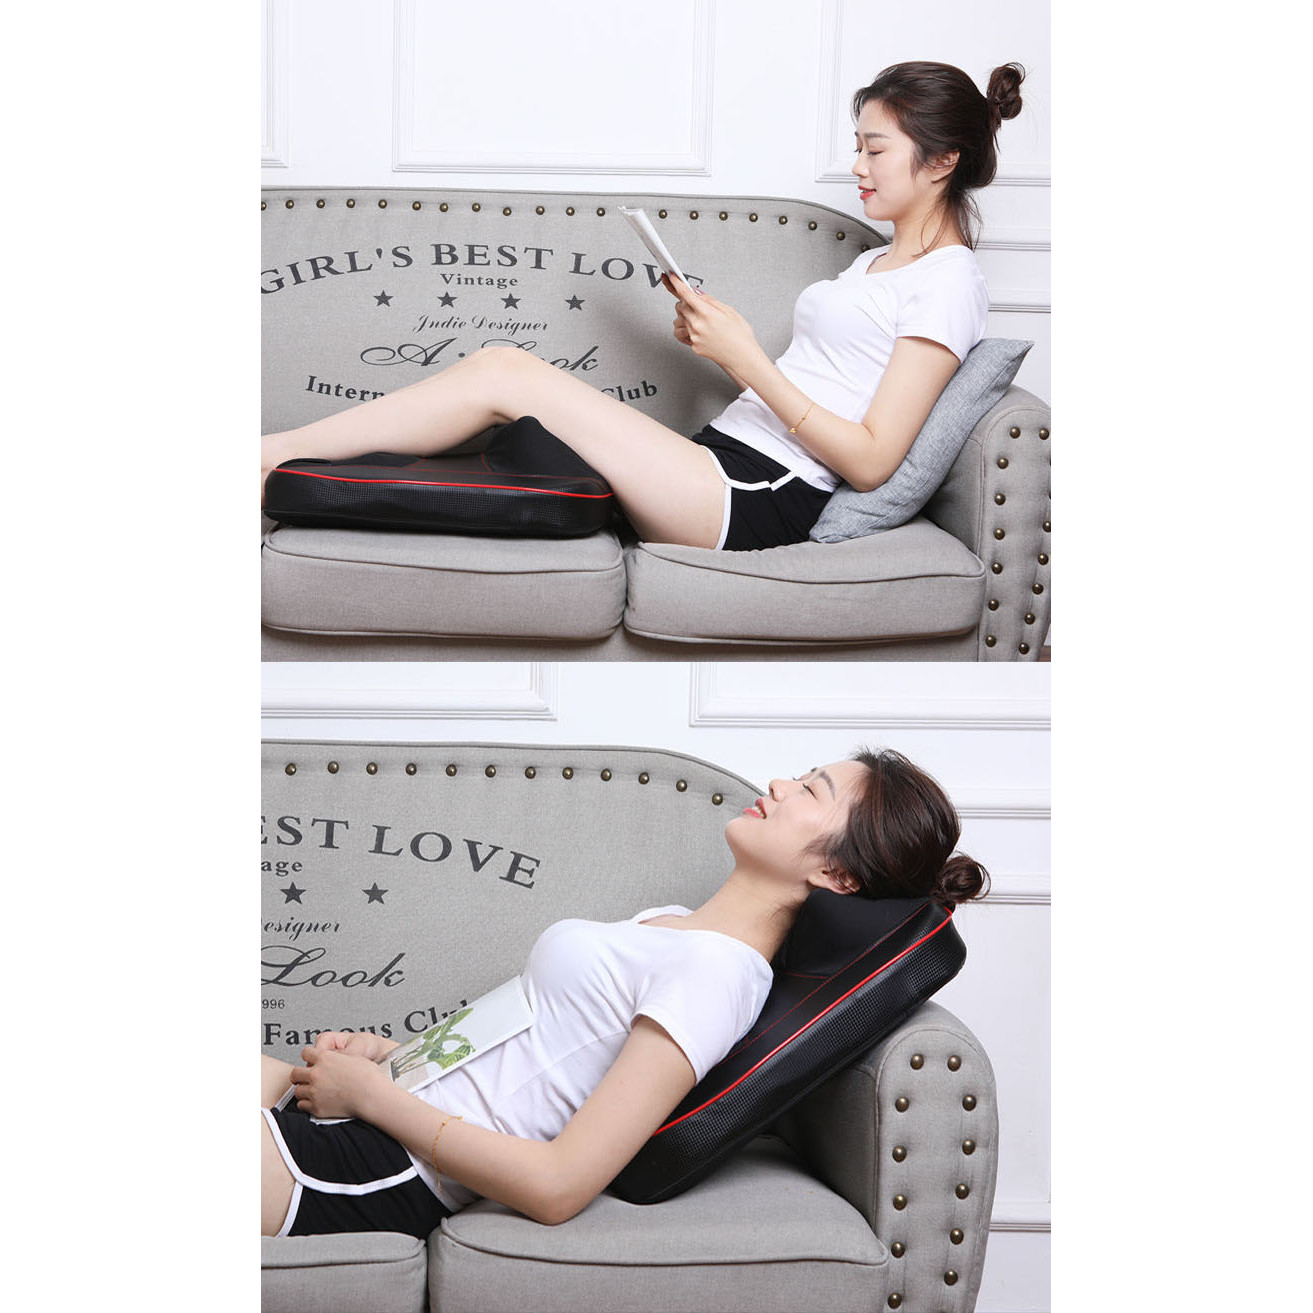 Máy massage cột sống, cổ và lưng X928 giúp thư giãn giải tỏa căng thẳng , mệt mỏi